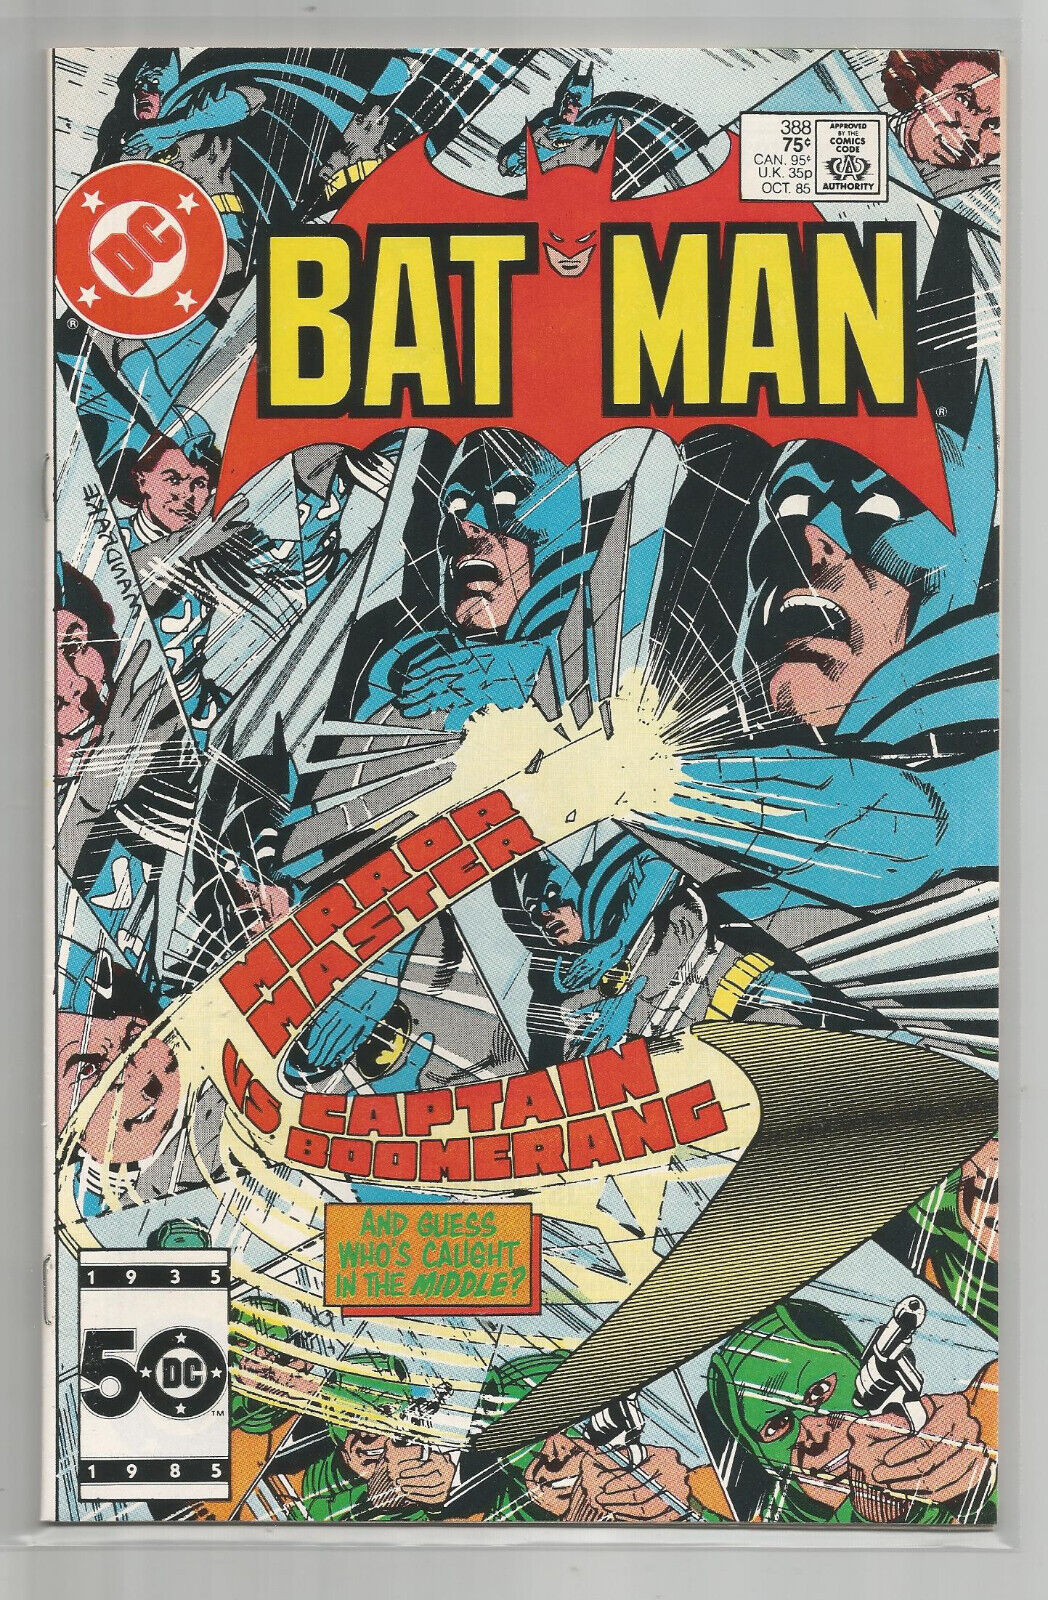 BATMAN # 388 * MIRROR MASTER * CAPTAIN BOOMERANG * DC COMICS * 1985 *